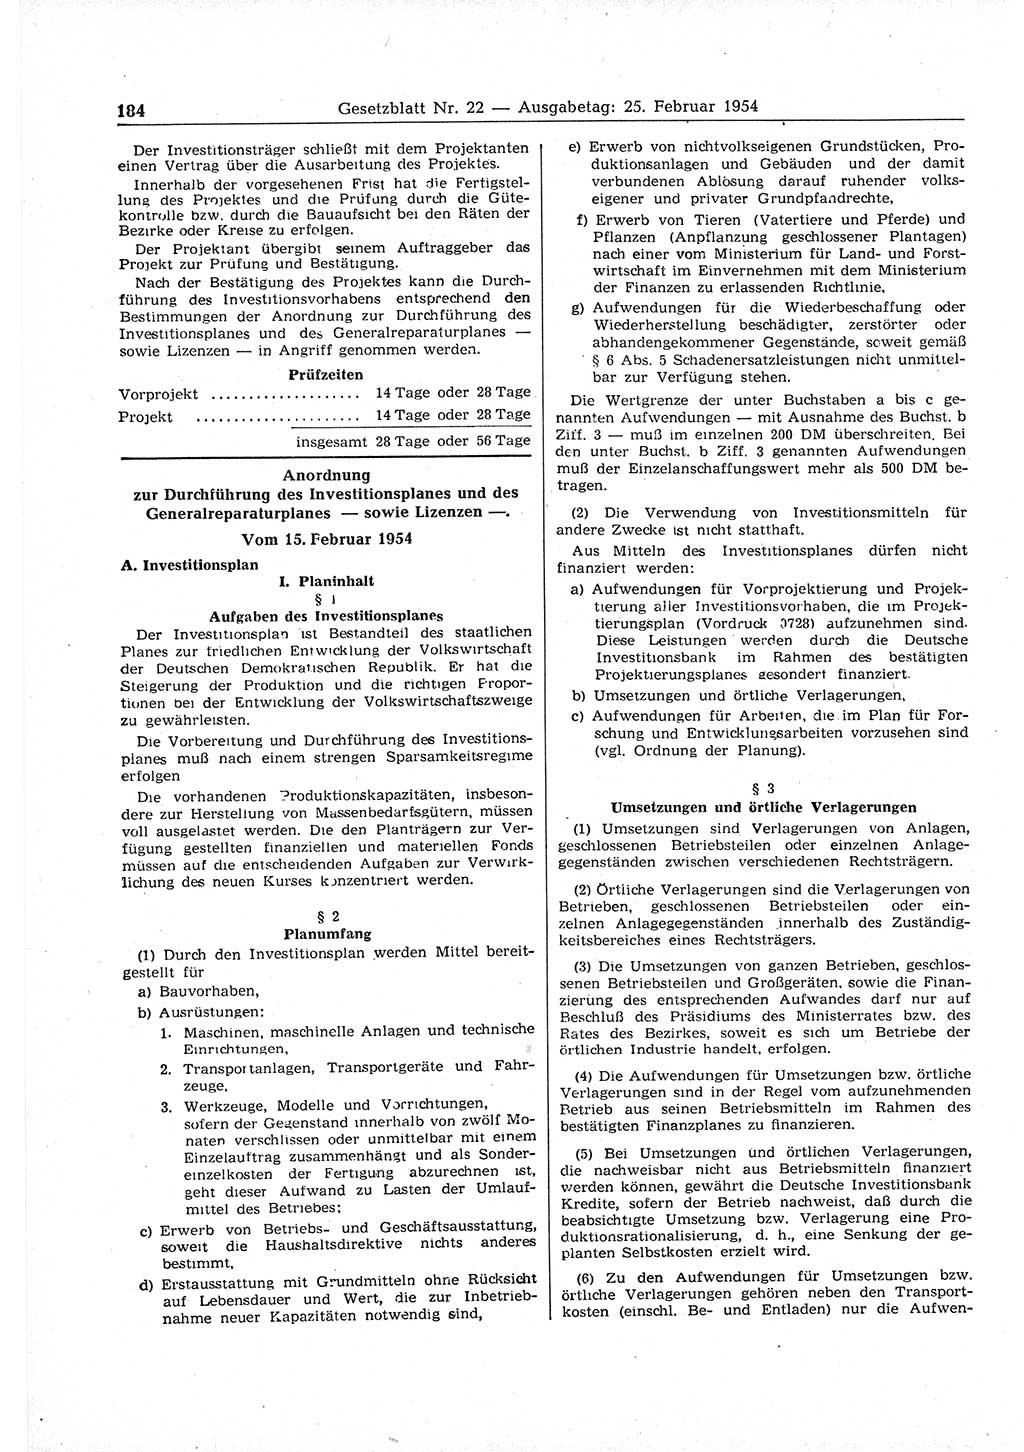 Gesetzblatt (GBl.) der Deutschen Demokratischen Republik (DDR) 1954, Seite 184 (GBl. DDR 1954, S. 184)